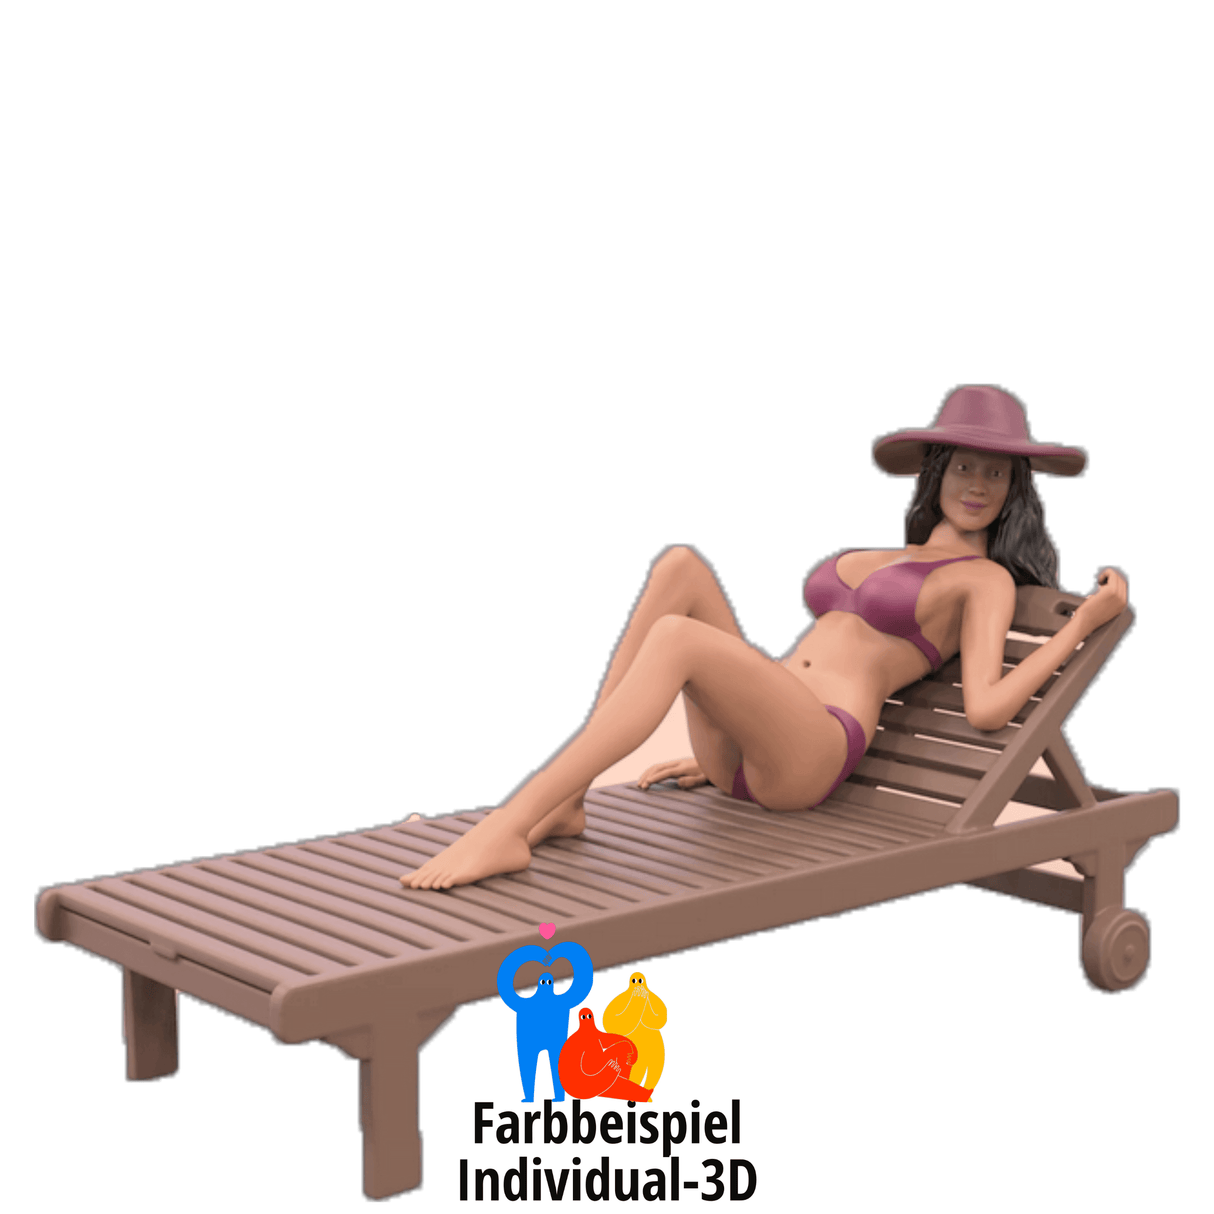 Frau auf einer Sonnenliege beim Sonnenbaden Minaturfigur